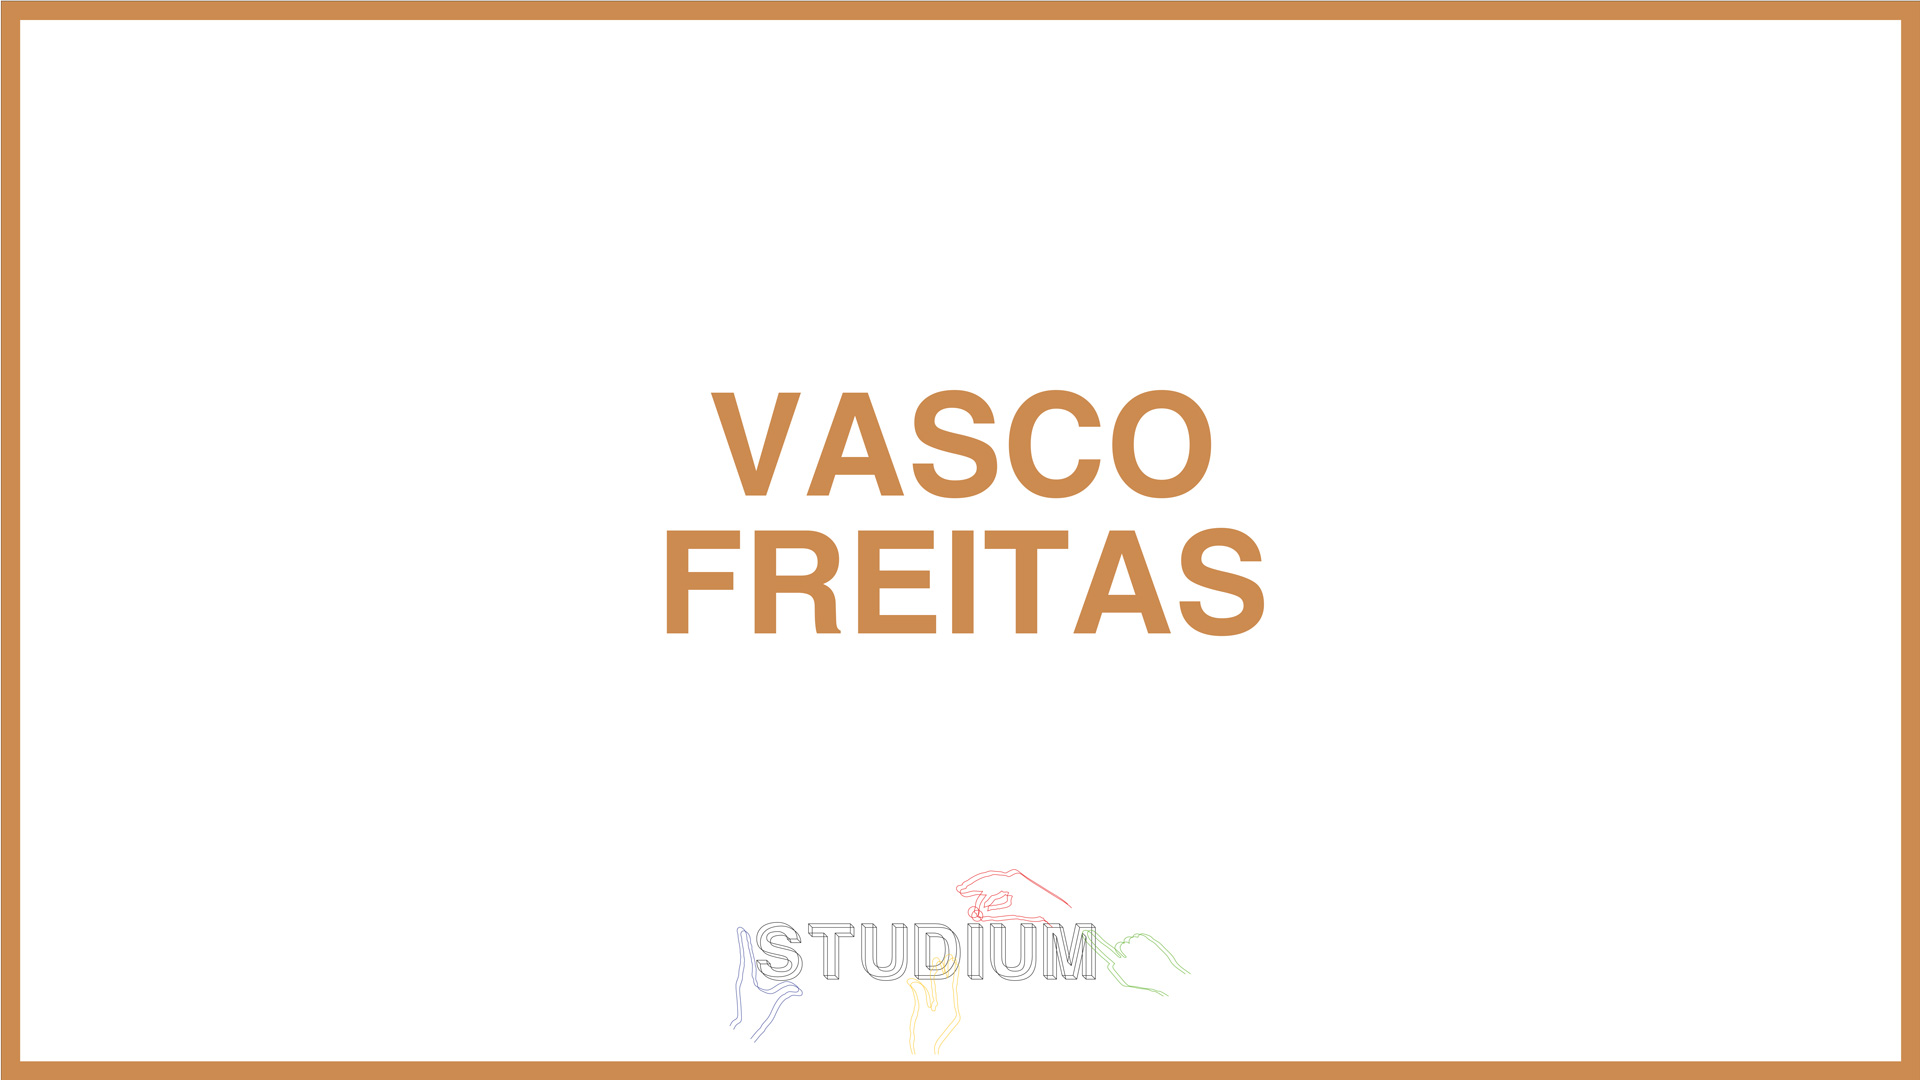 Vasco Freitas powered by Redken